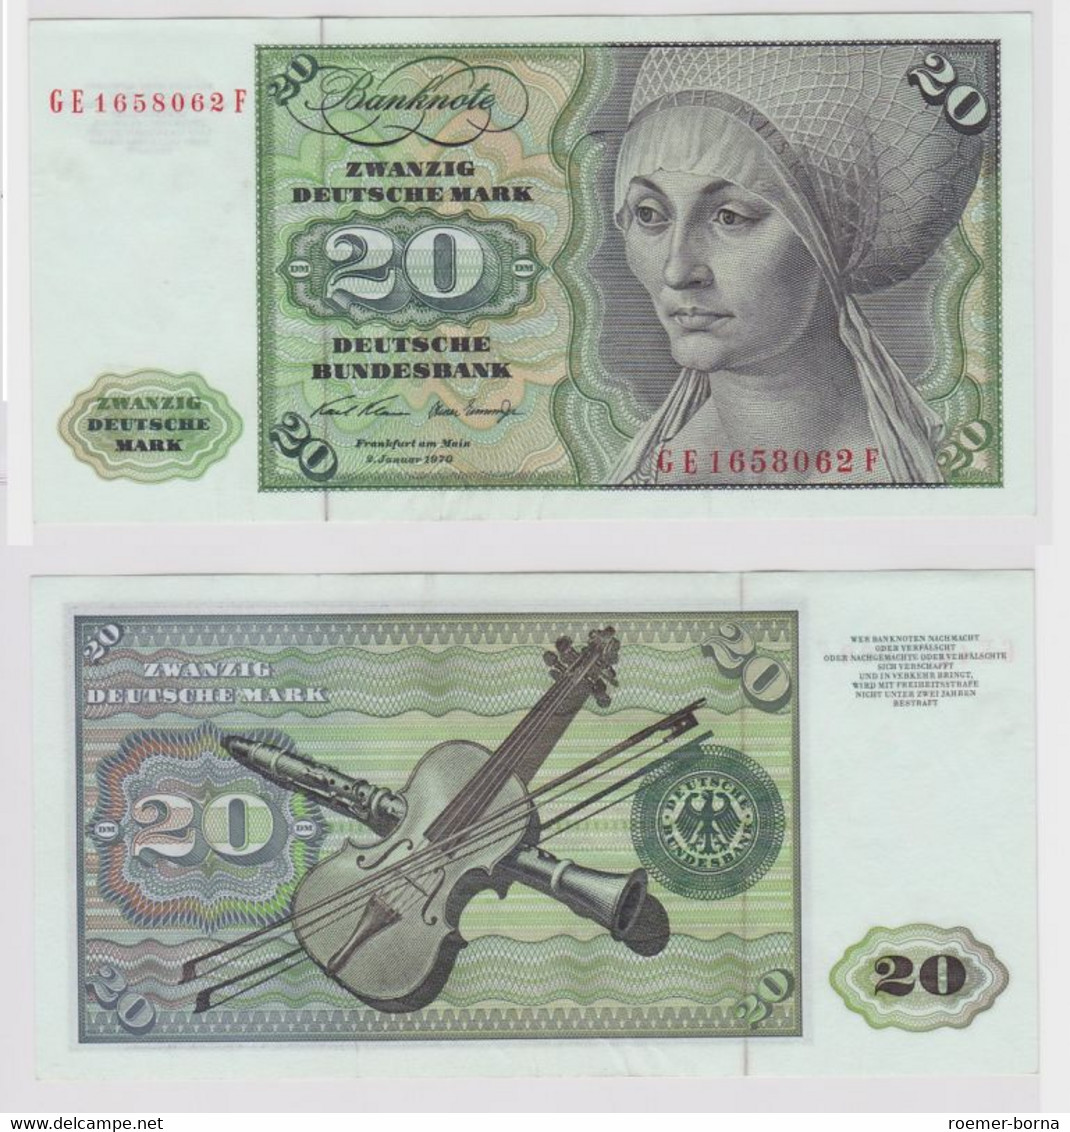 T148295 Banknote 20 DM Deutsche Mark Ro. 271b Schein 2.Jan. 1970 KN GE 1658062 F - 20 DM